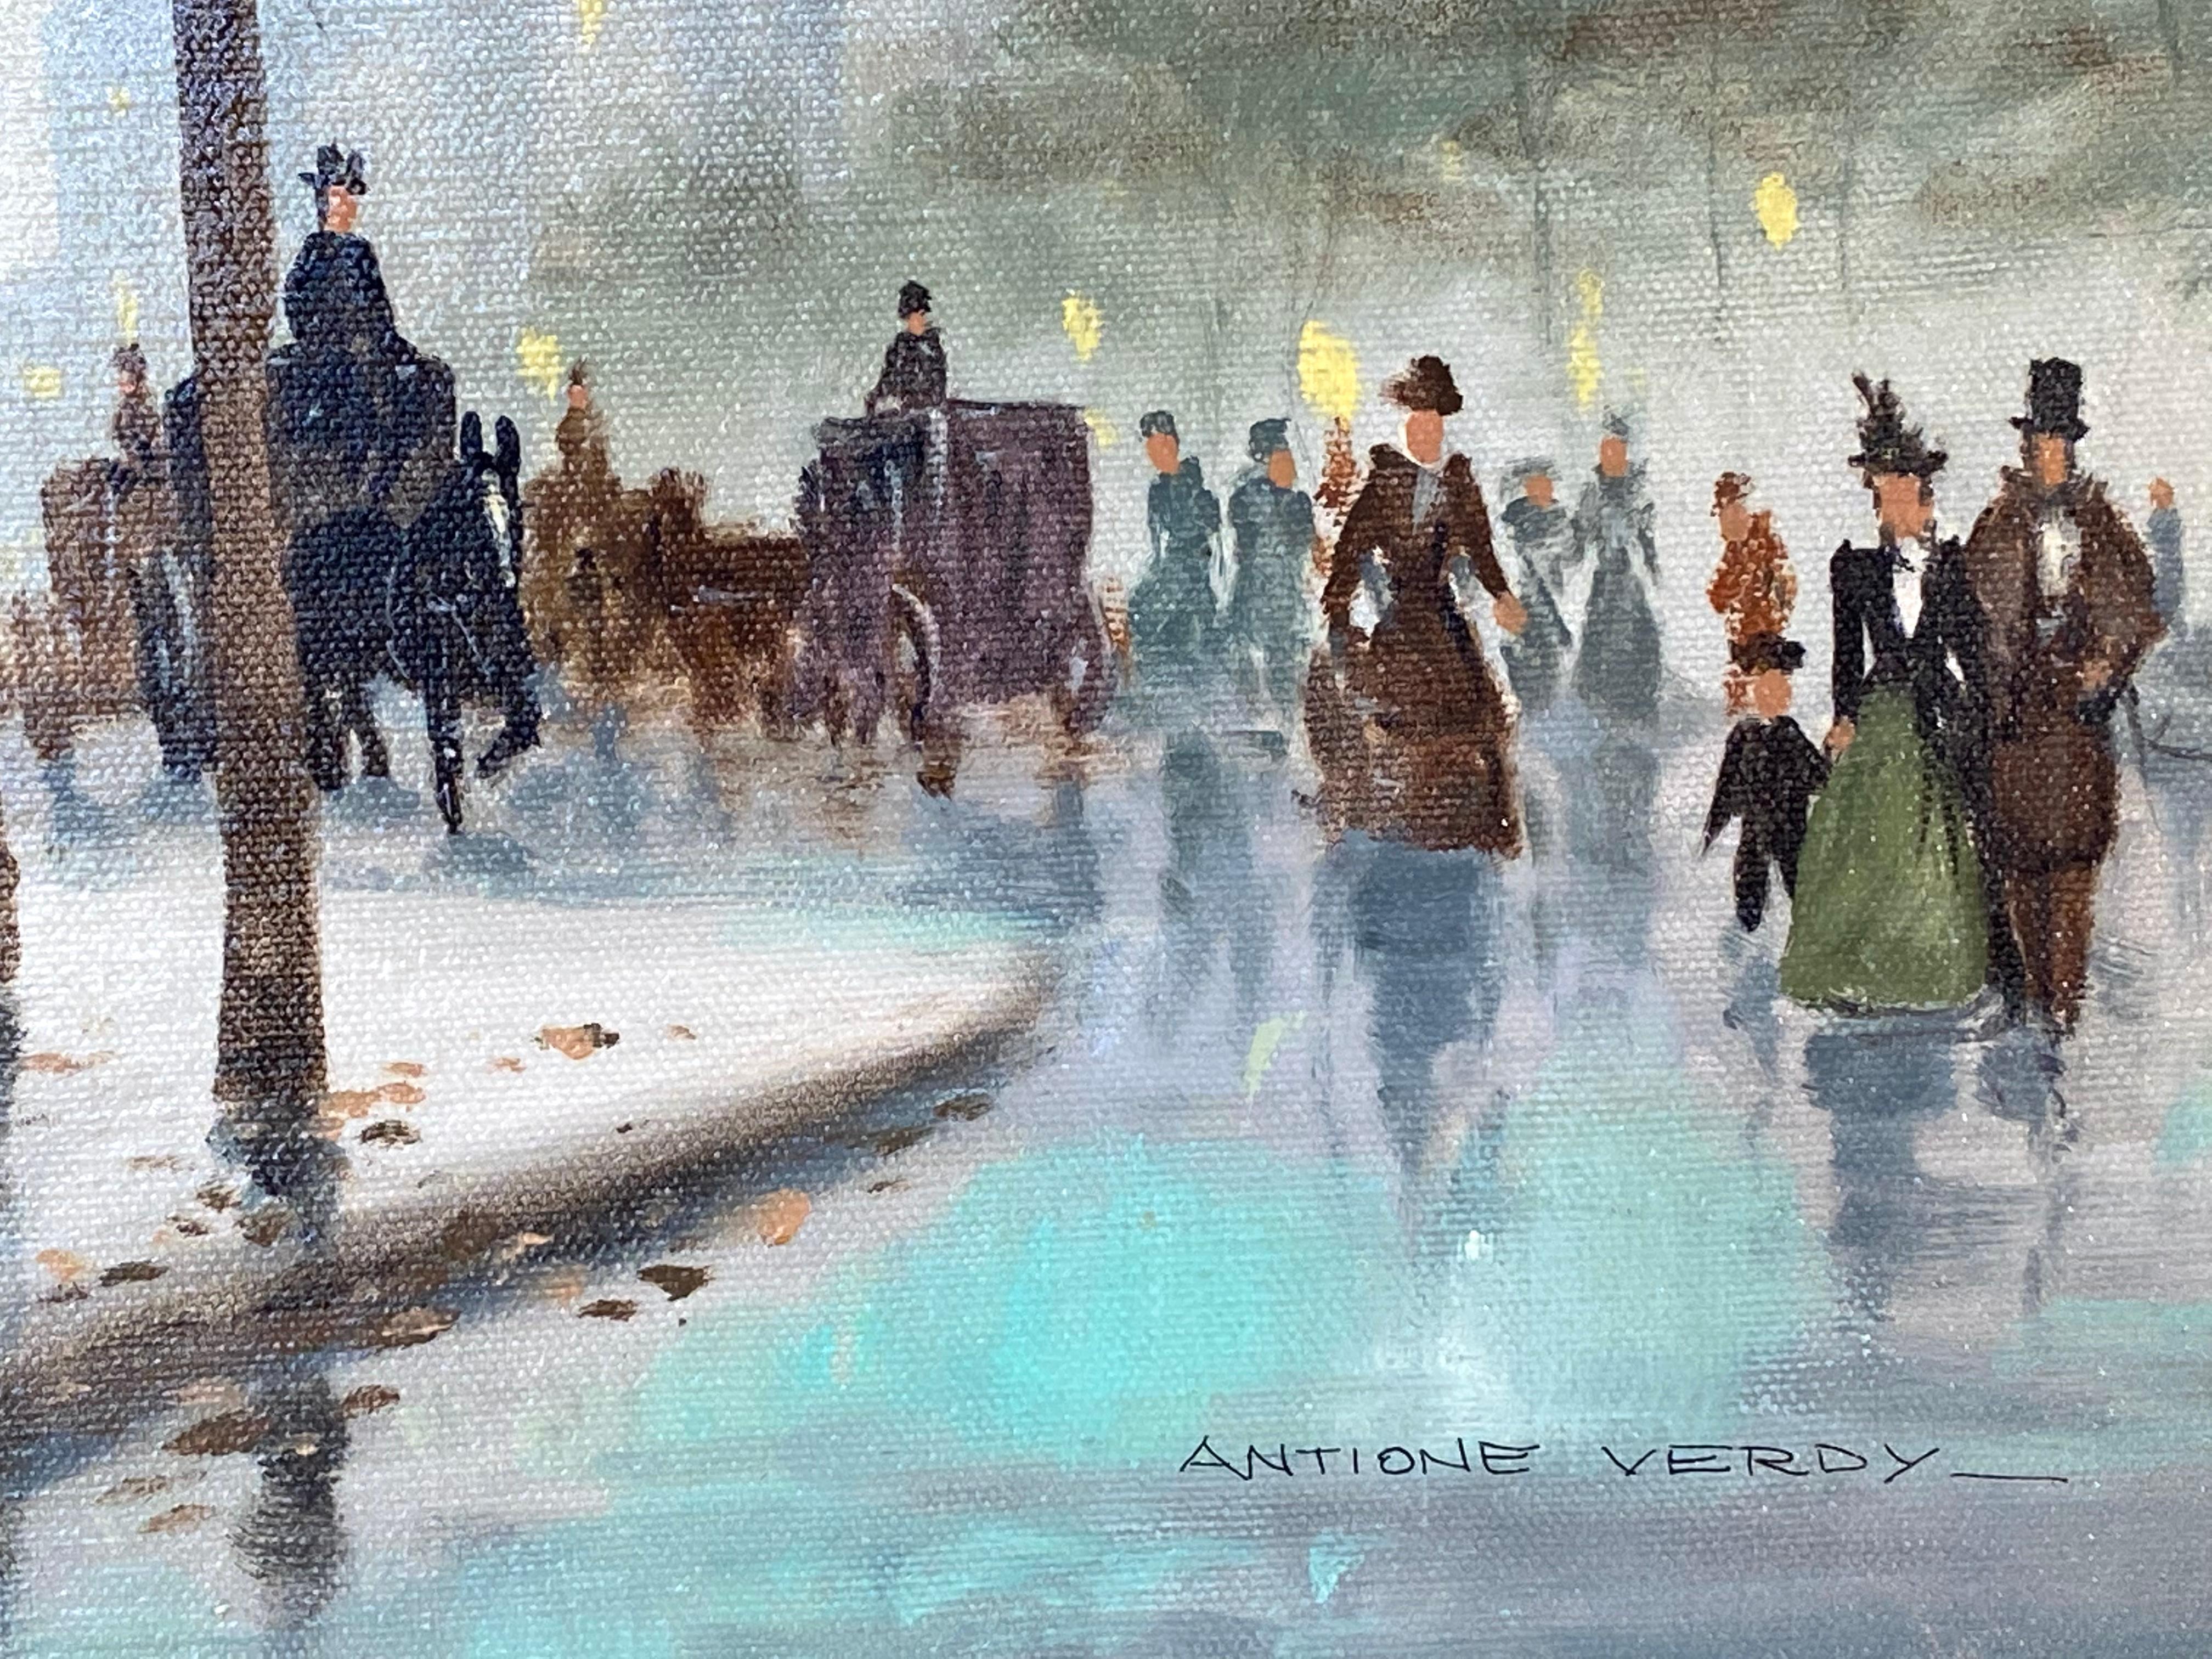 Originalgemälde in Öl auf Leinwand aus den alten Tagen von Paris mit flanierenden Parisern und Pferdekutschen, die sich nach einem Regen ihren Weg durch die Straßen von Paris entlang der Seine bahnen.  Im dunstigen Hintergrund sind historische